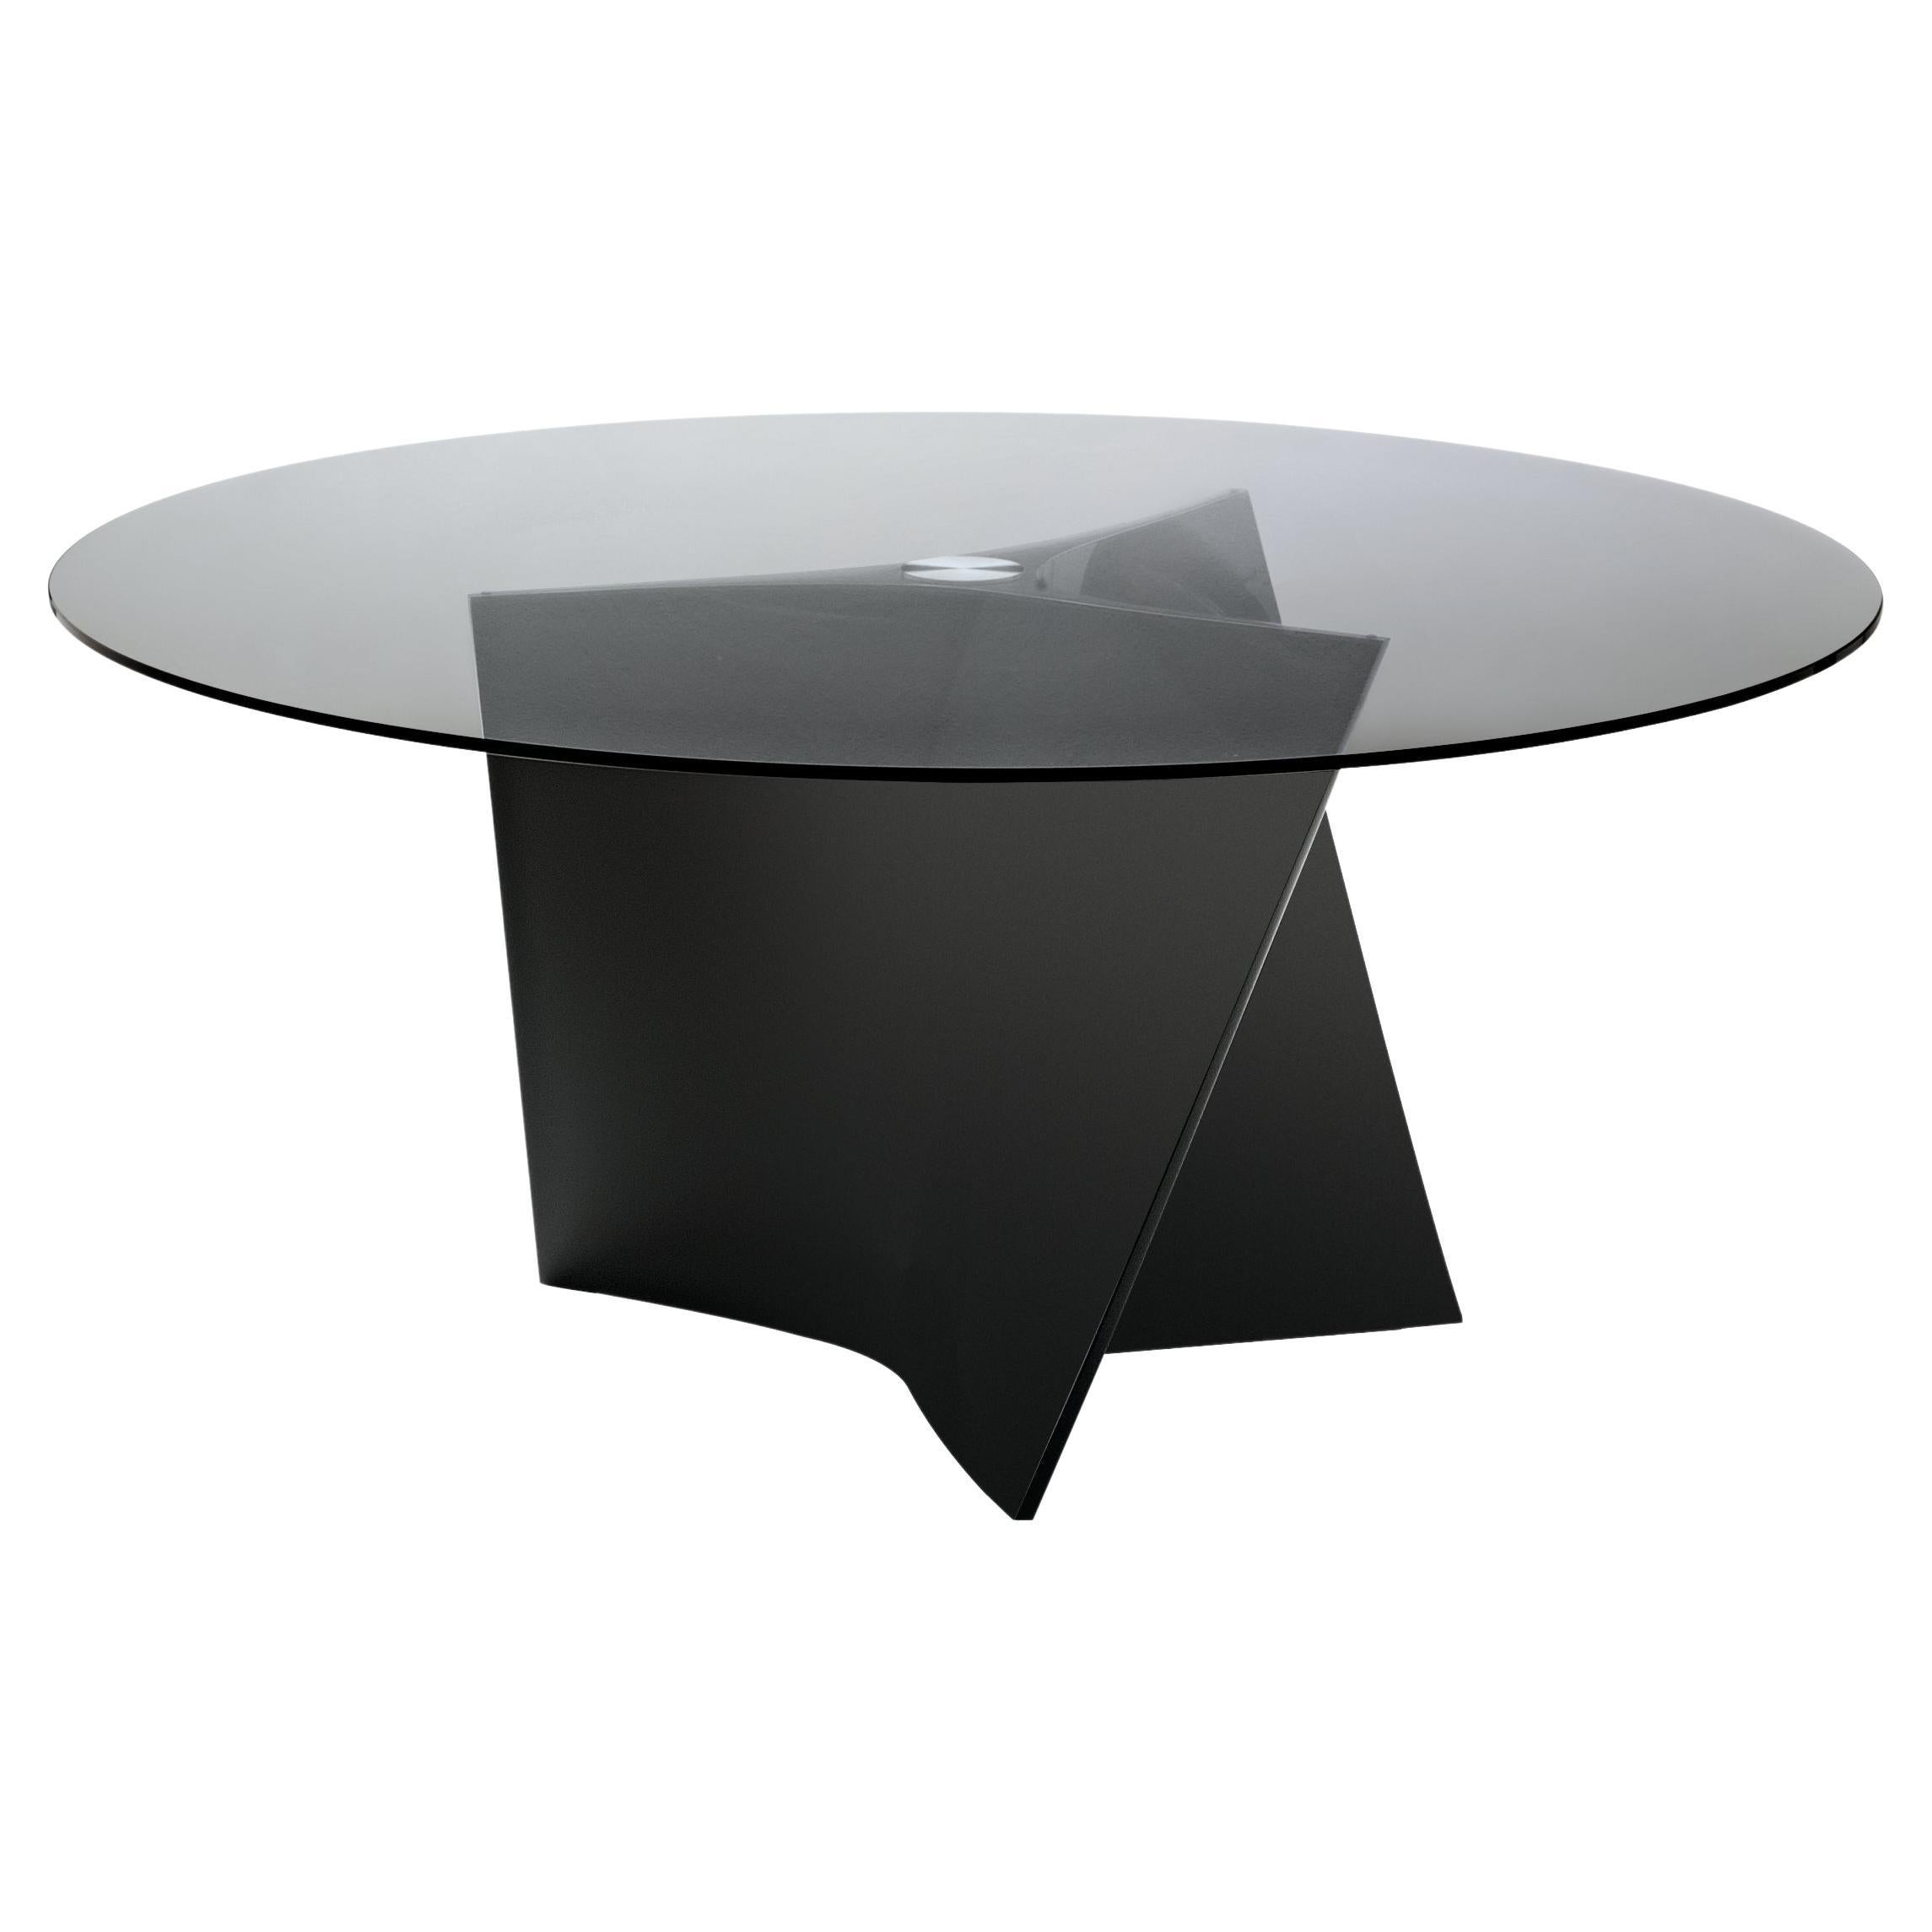 Kleiner Zanotta-Tisch Elica mit rauchfarbener Glasplatte und schwarzem Rahmen von Prospero Rasulo